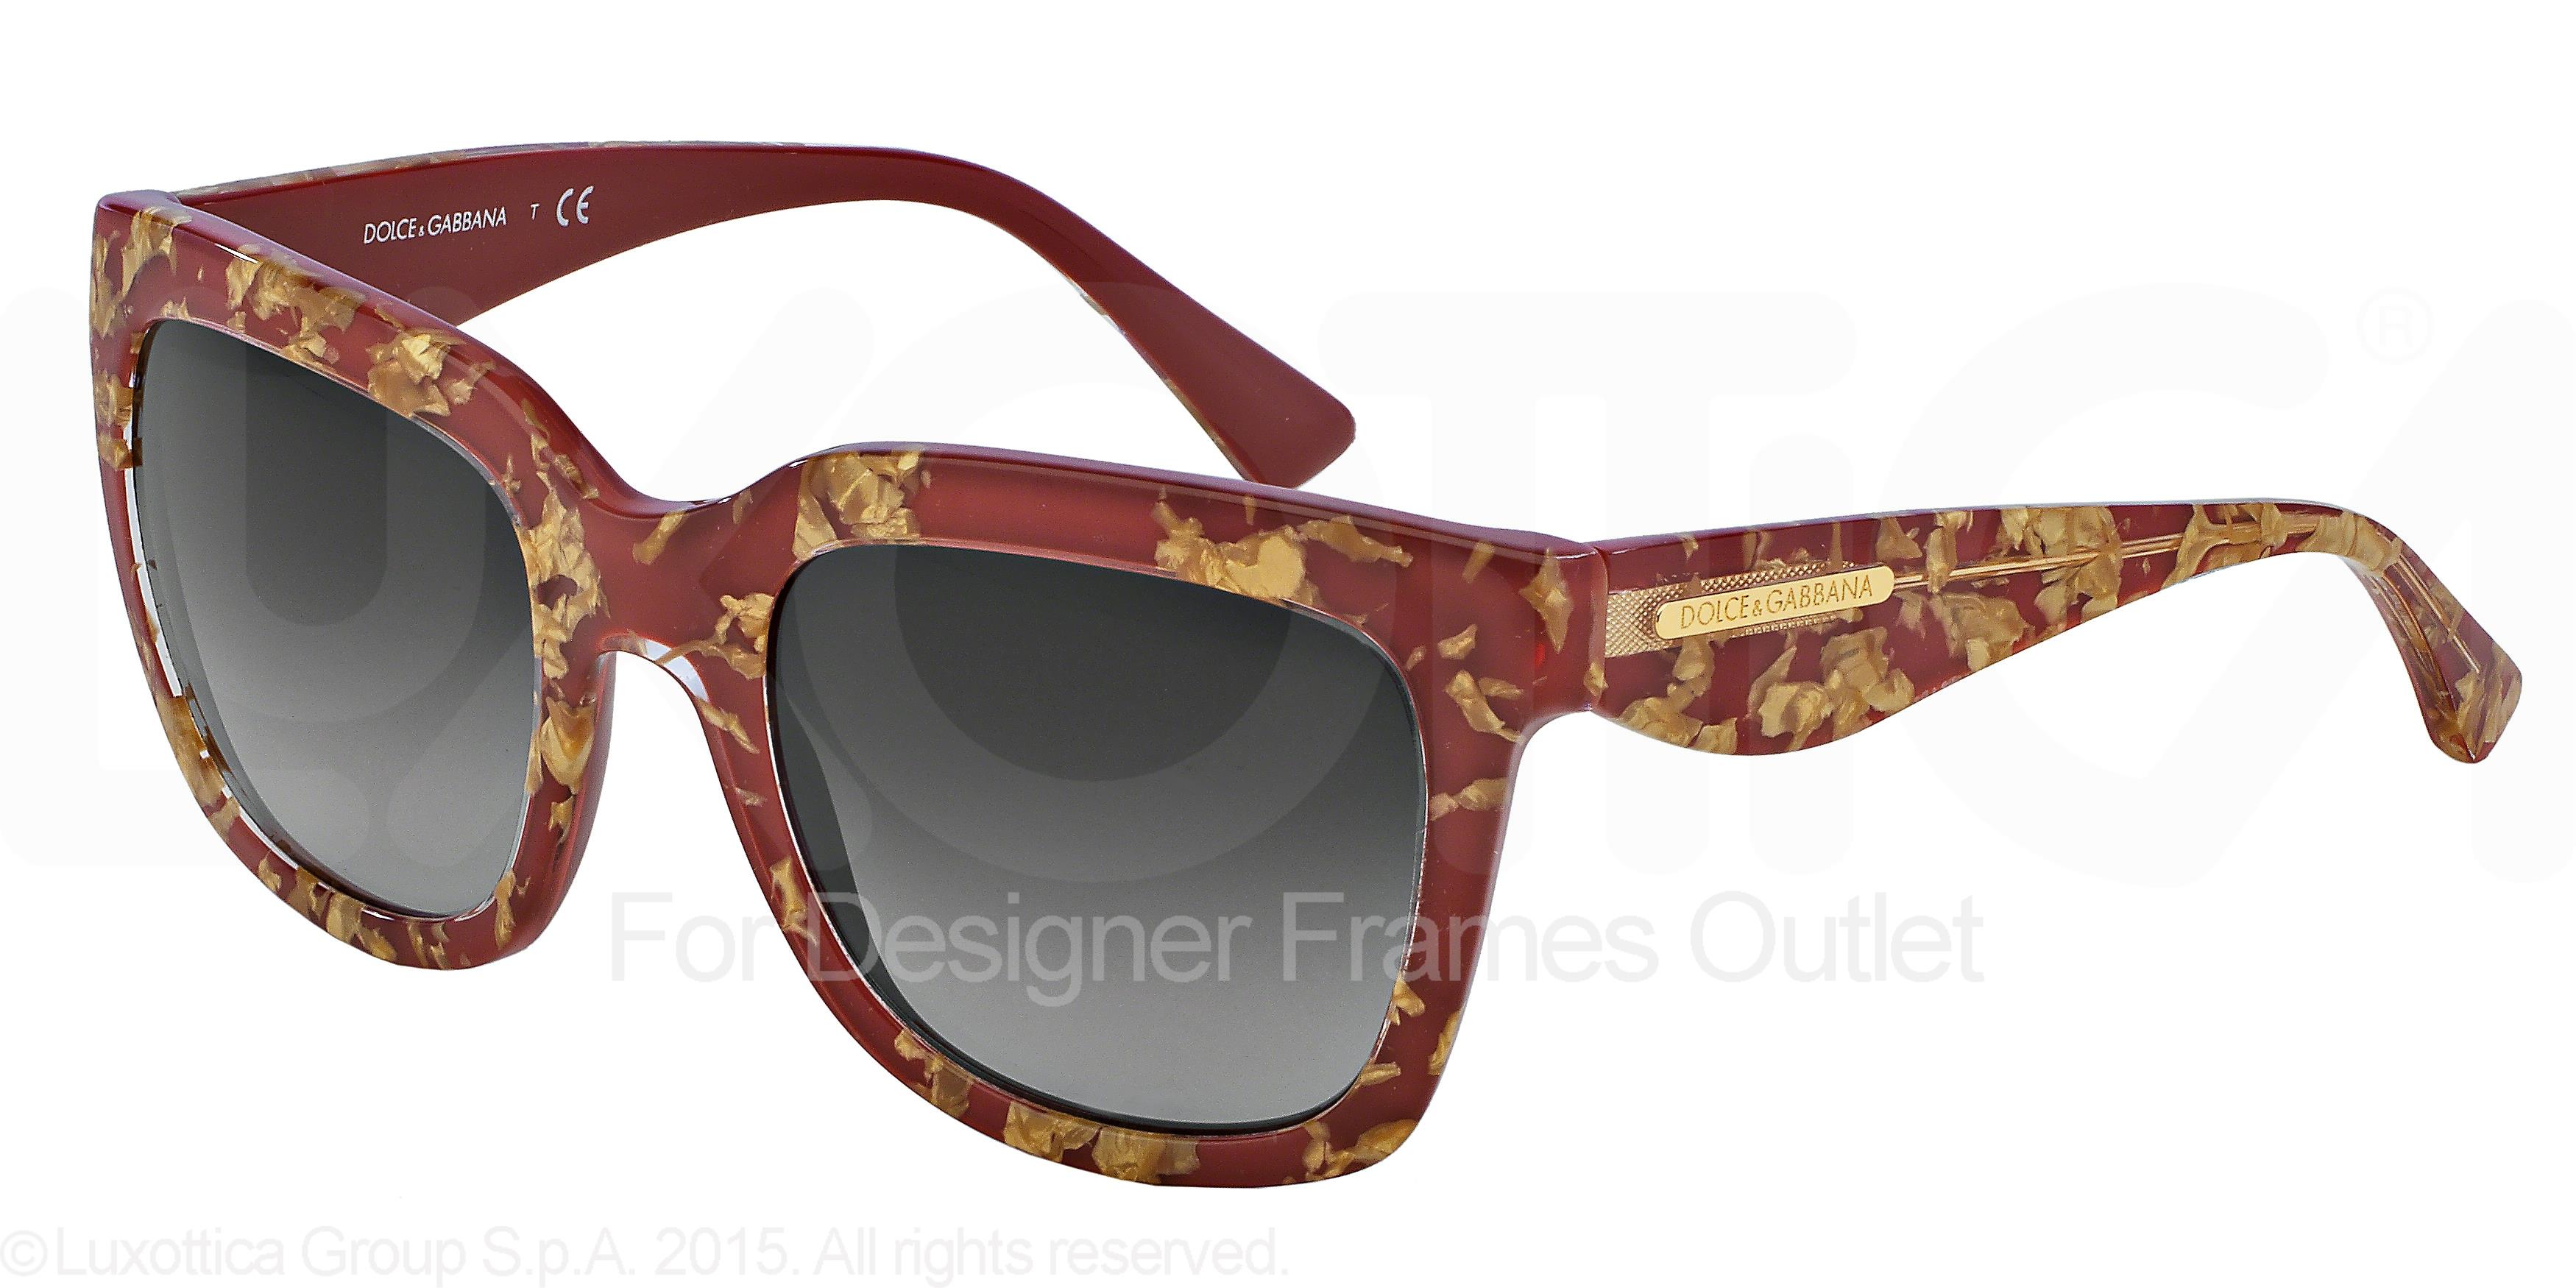 Nøjagtighed Højde porter Designer Frames Outlet. Dolce & Gabbana Sunglasses DG4197